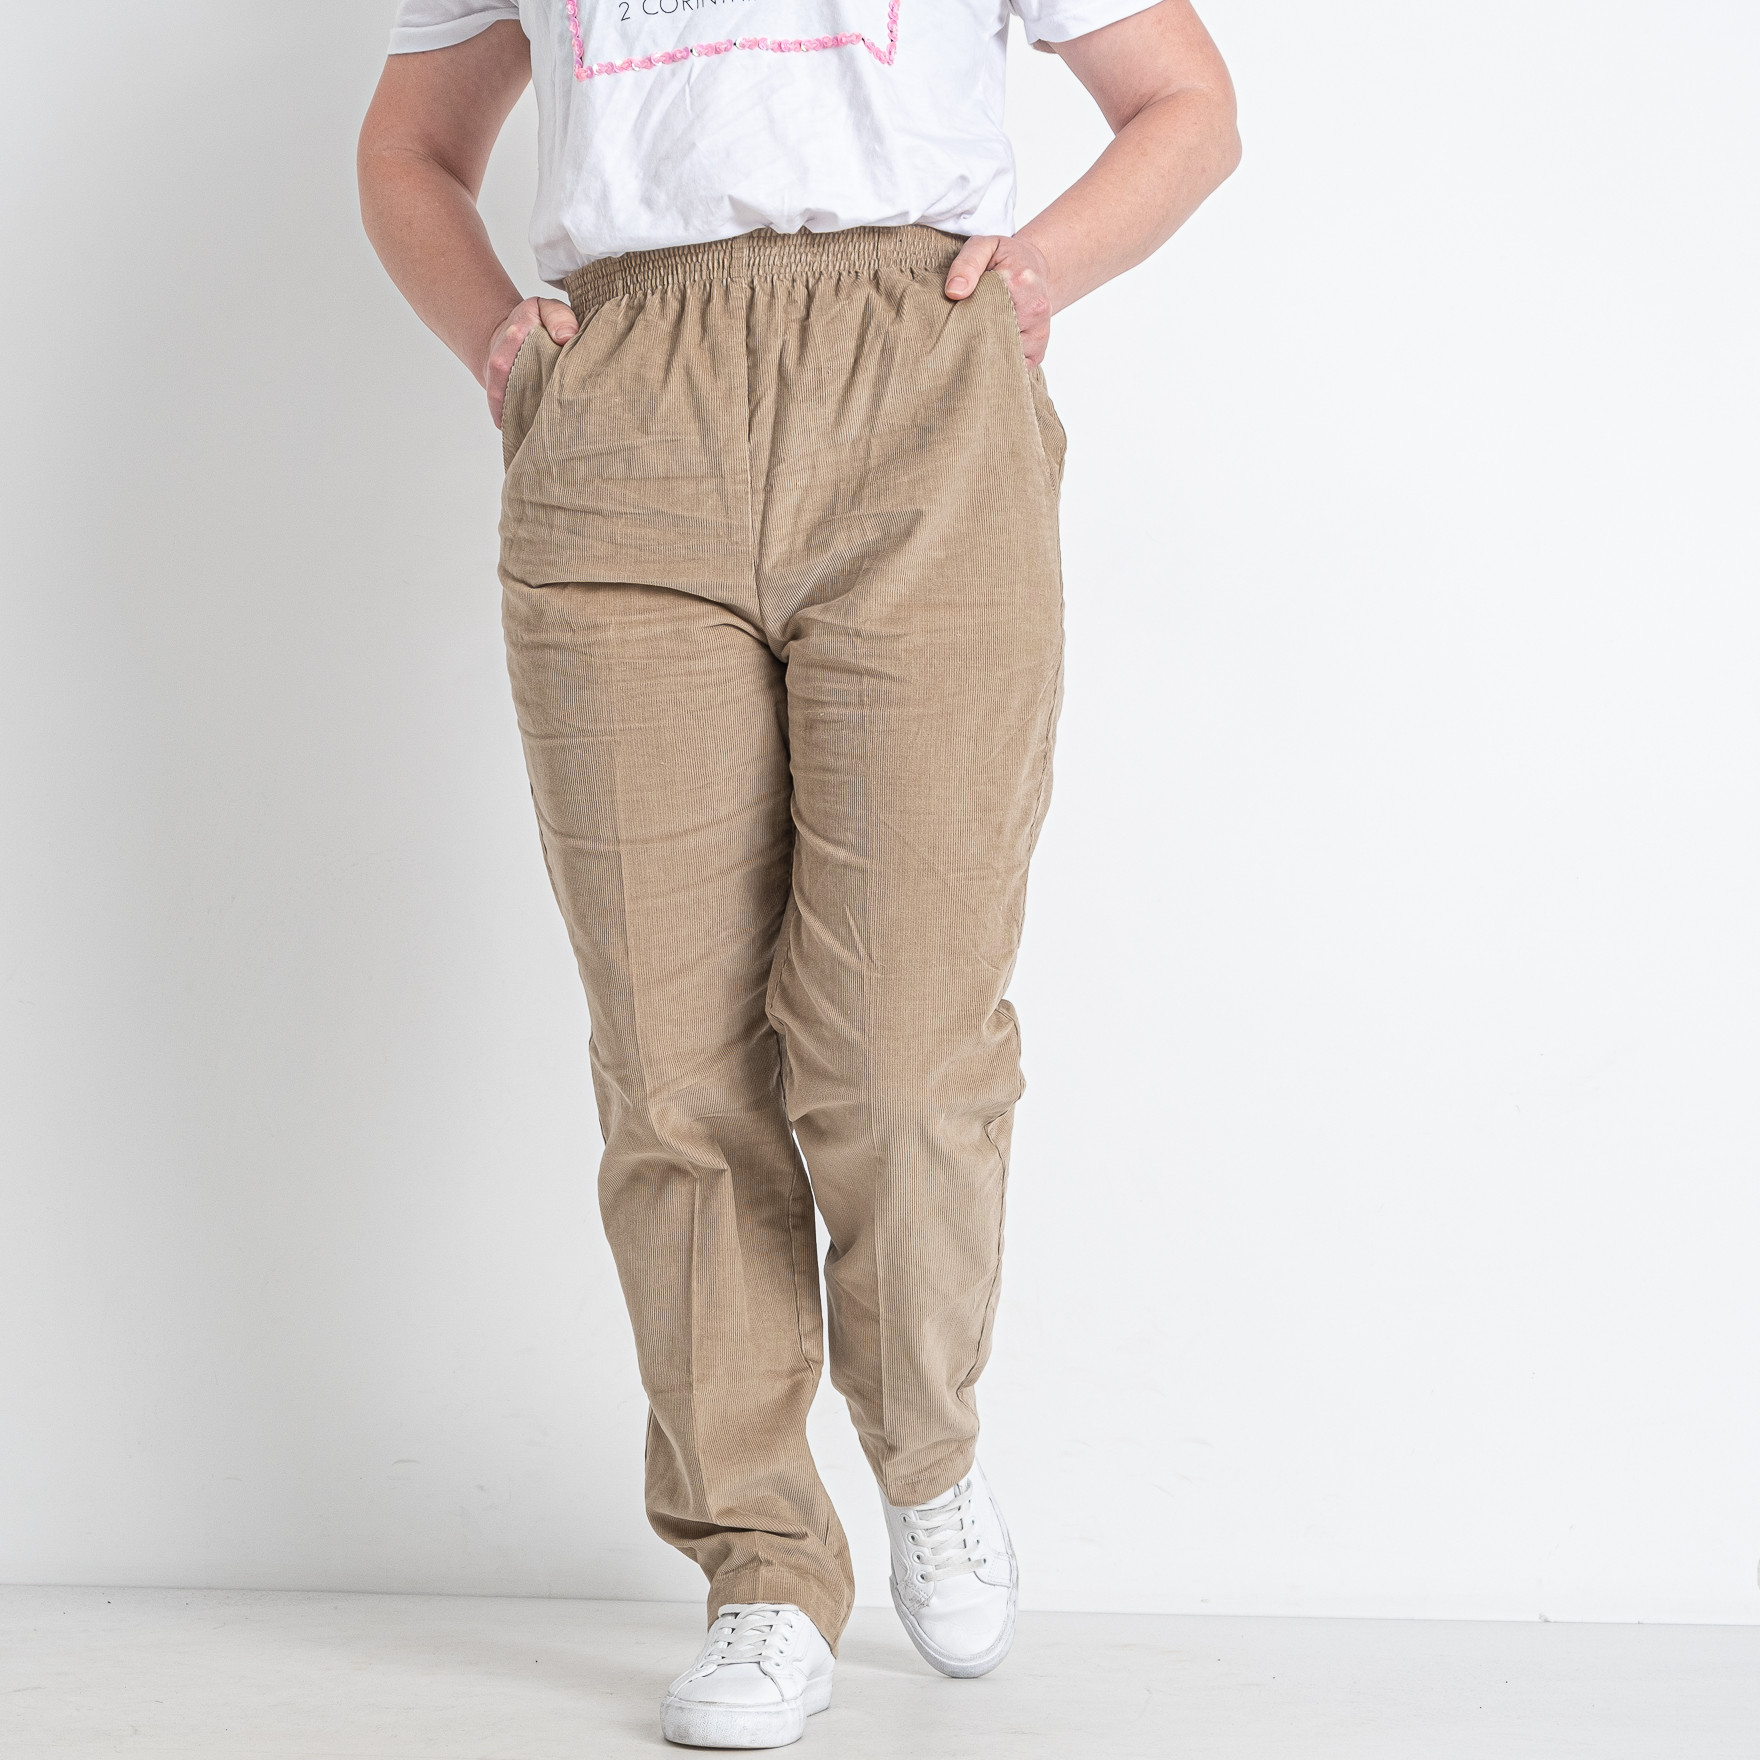 90117-33 бежевые женские брюки (вельвет, 6 ед. размеры на бирках: 12-18, соответствуют полубаталу: L-XL) 